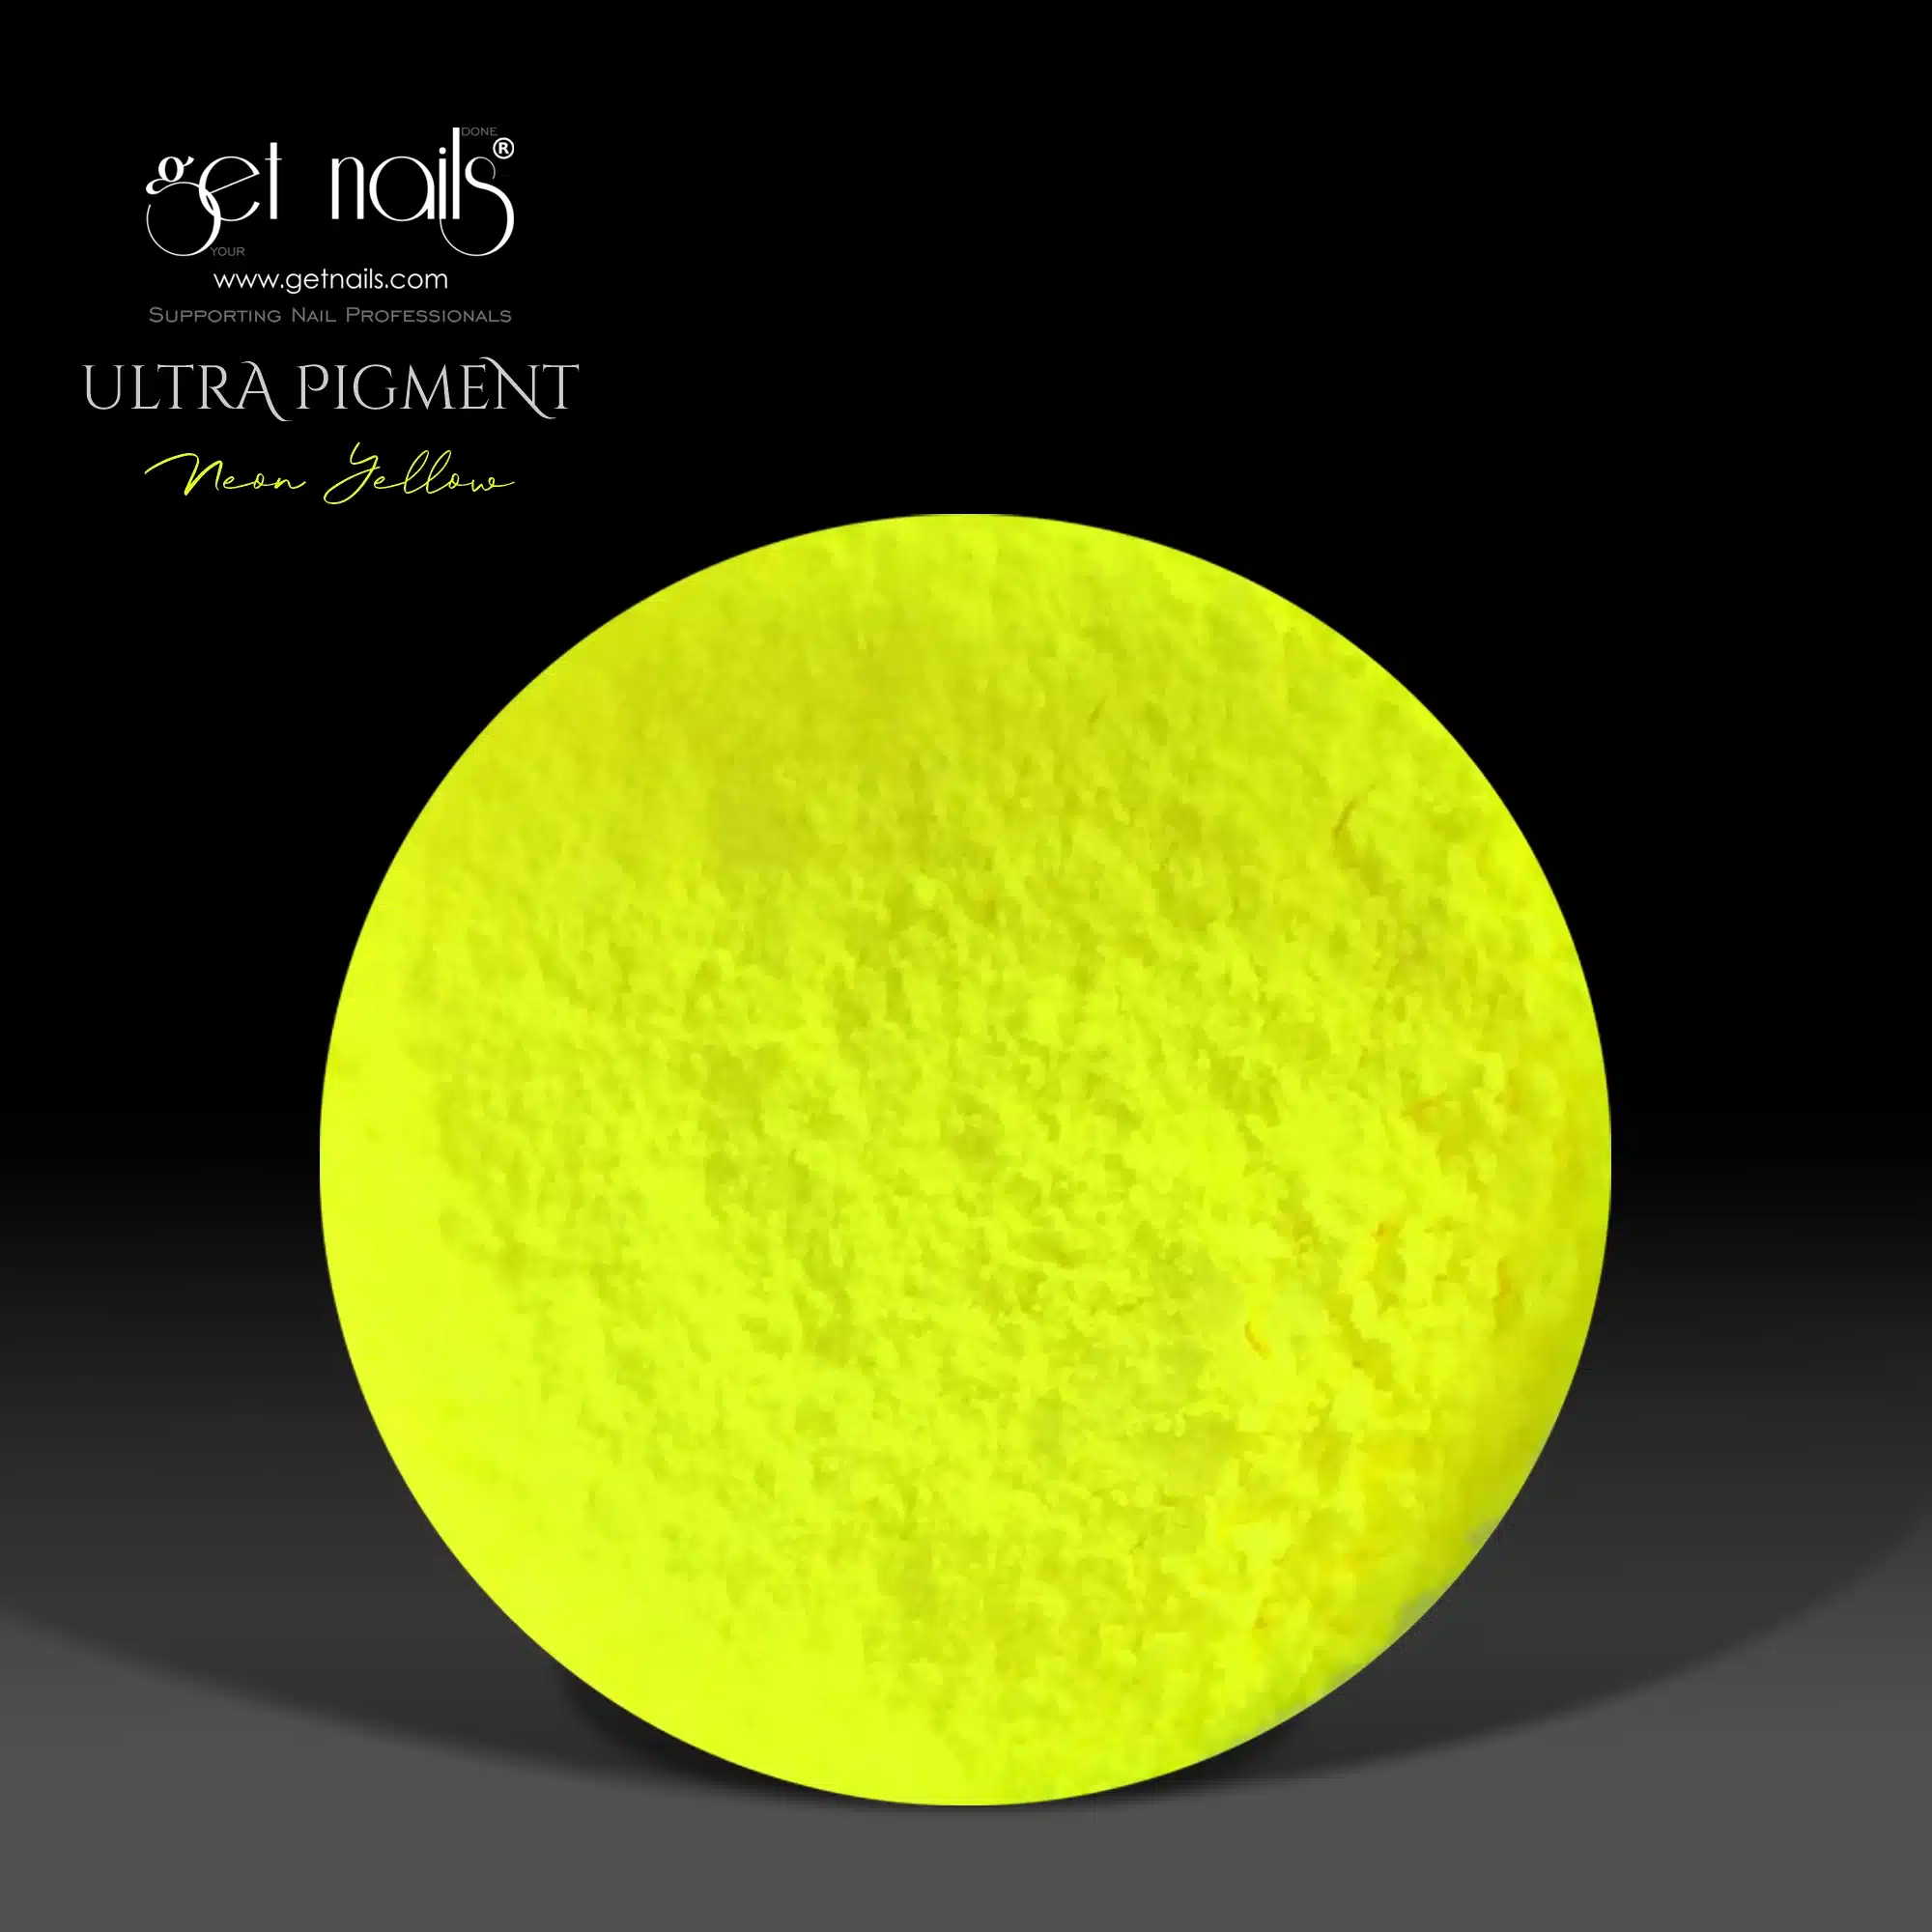 Get Nails Austria - Ультрапигмент неоново-желтый 1.5г